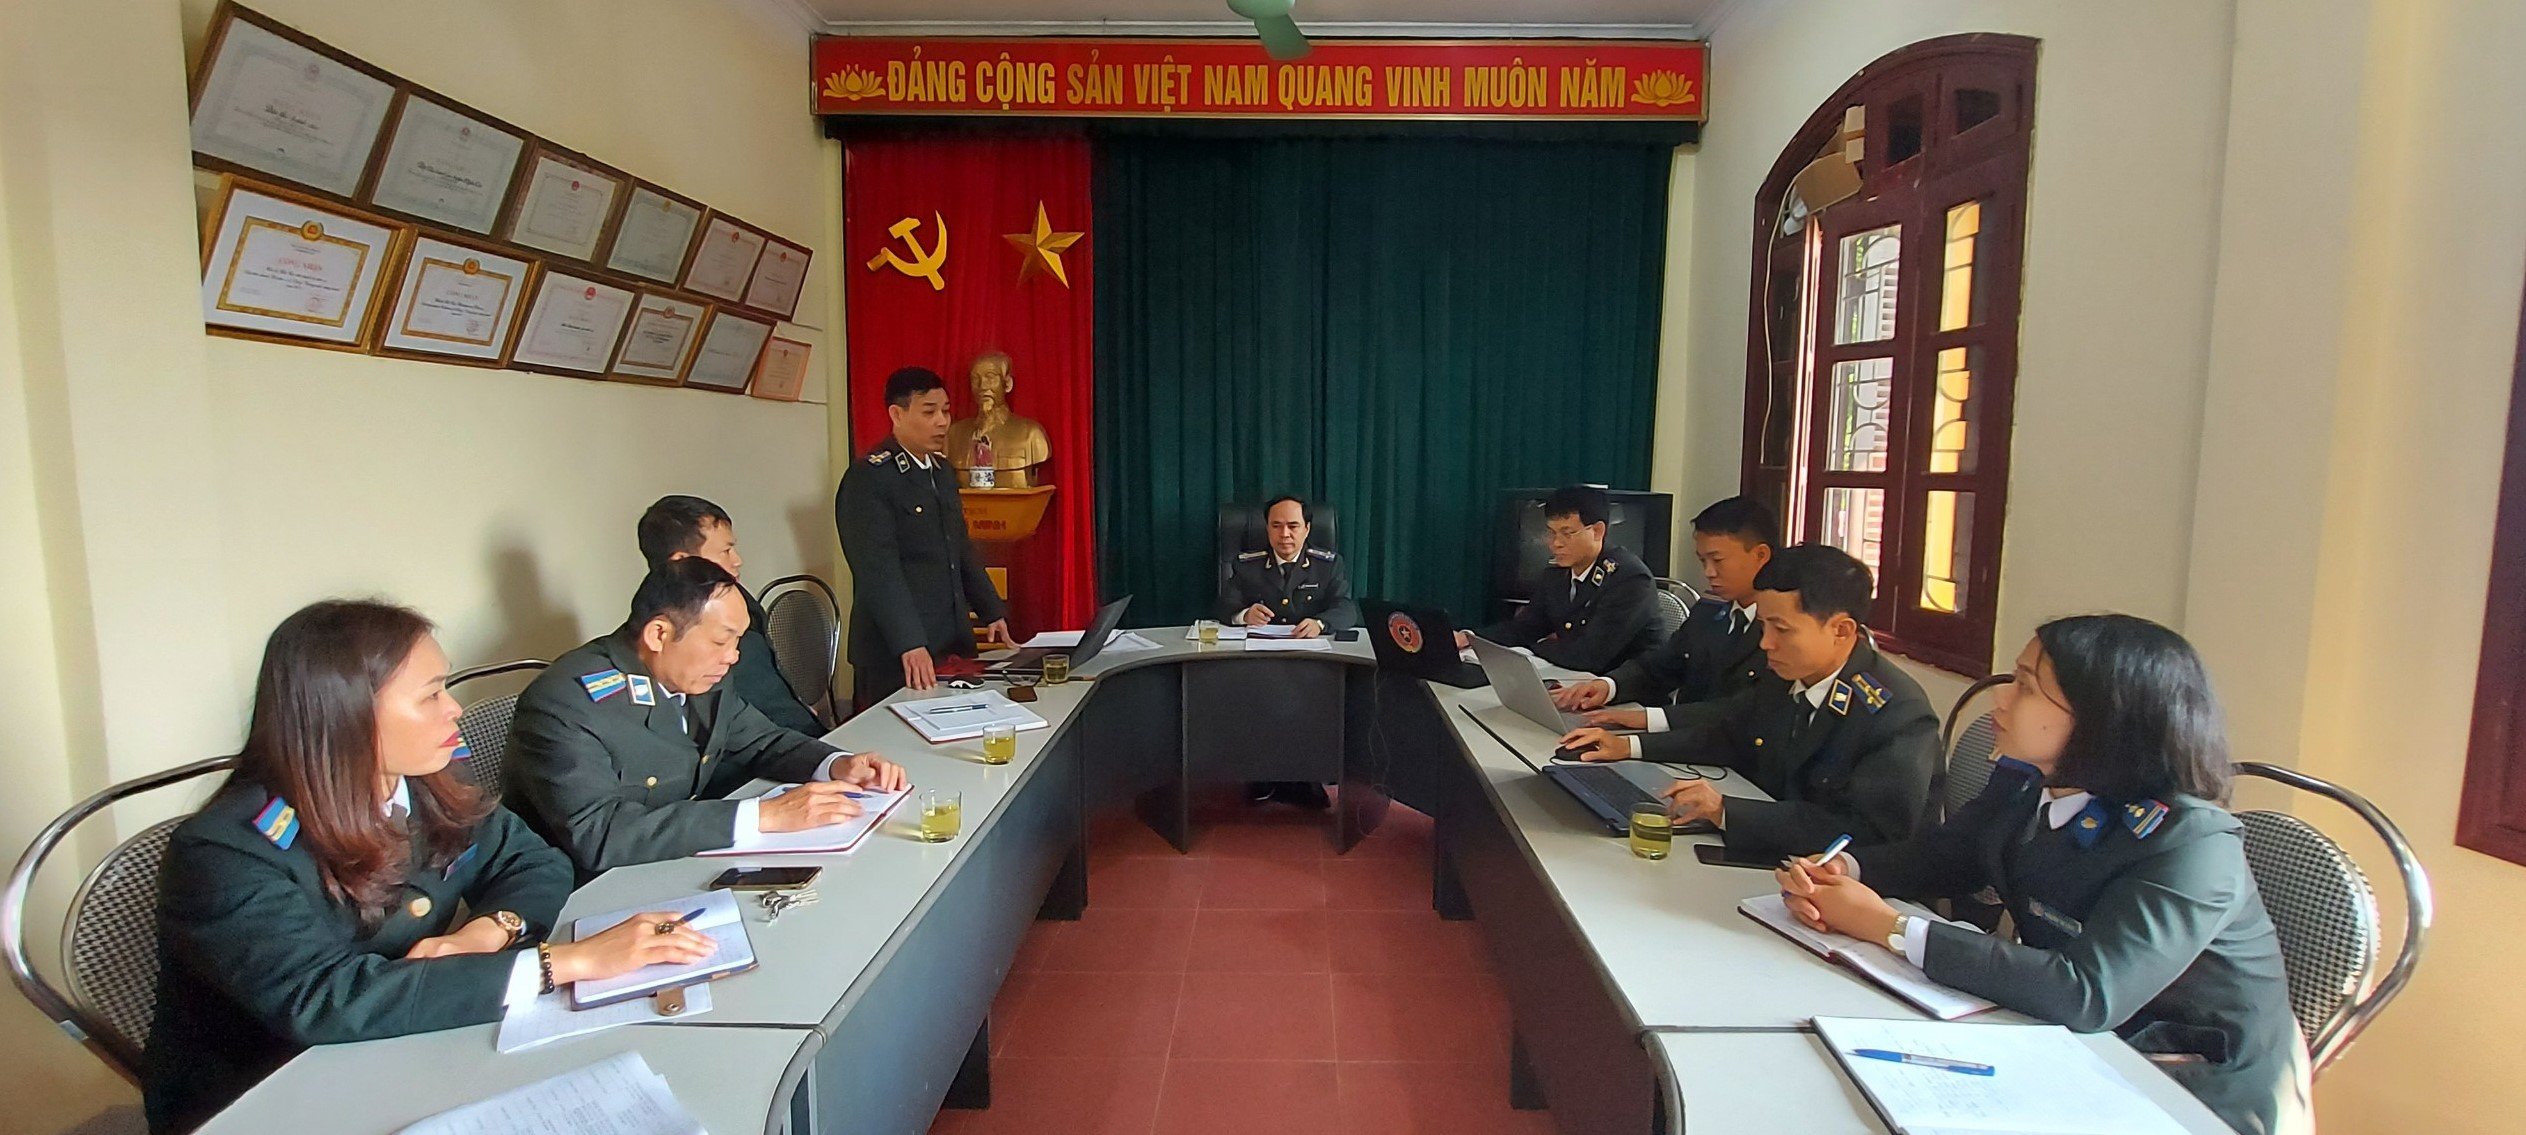 Cục Thi hành án dân sự tỉnh Nghệ An chỉ đạo, đôn đốc thực hiện chỉ tiêu nhiệm vụ đầu năm 2021.